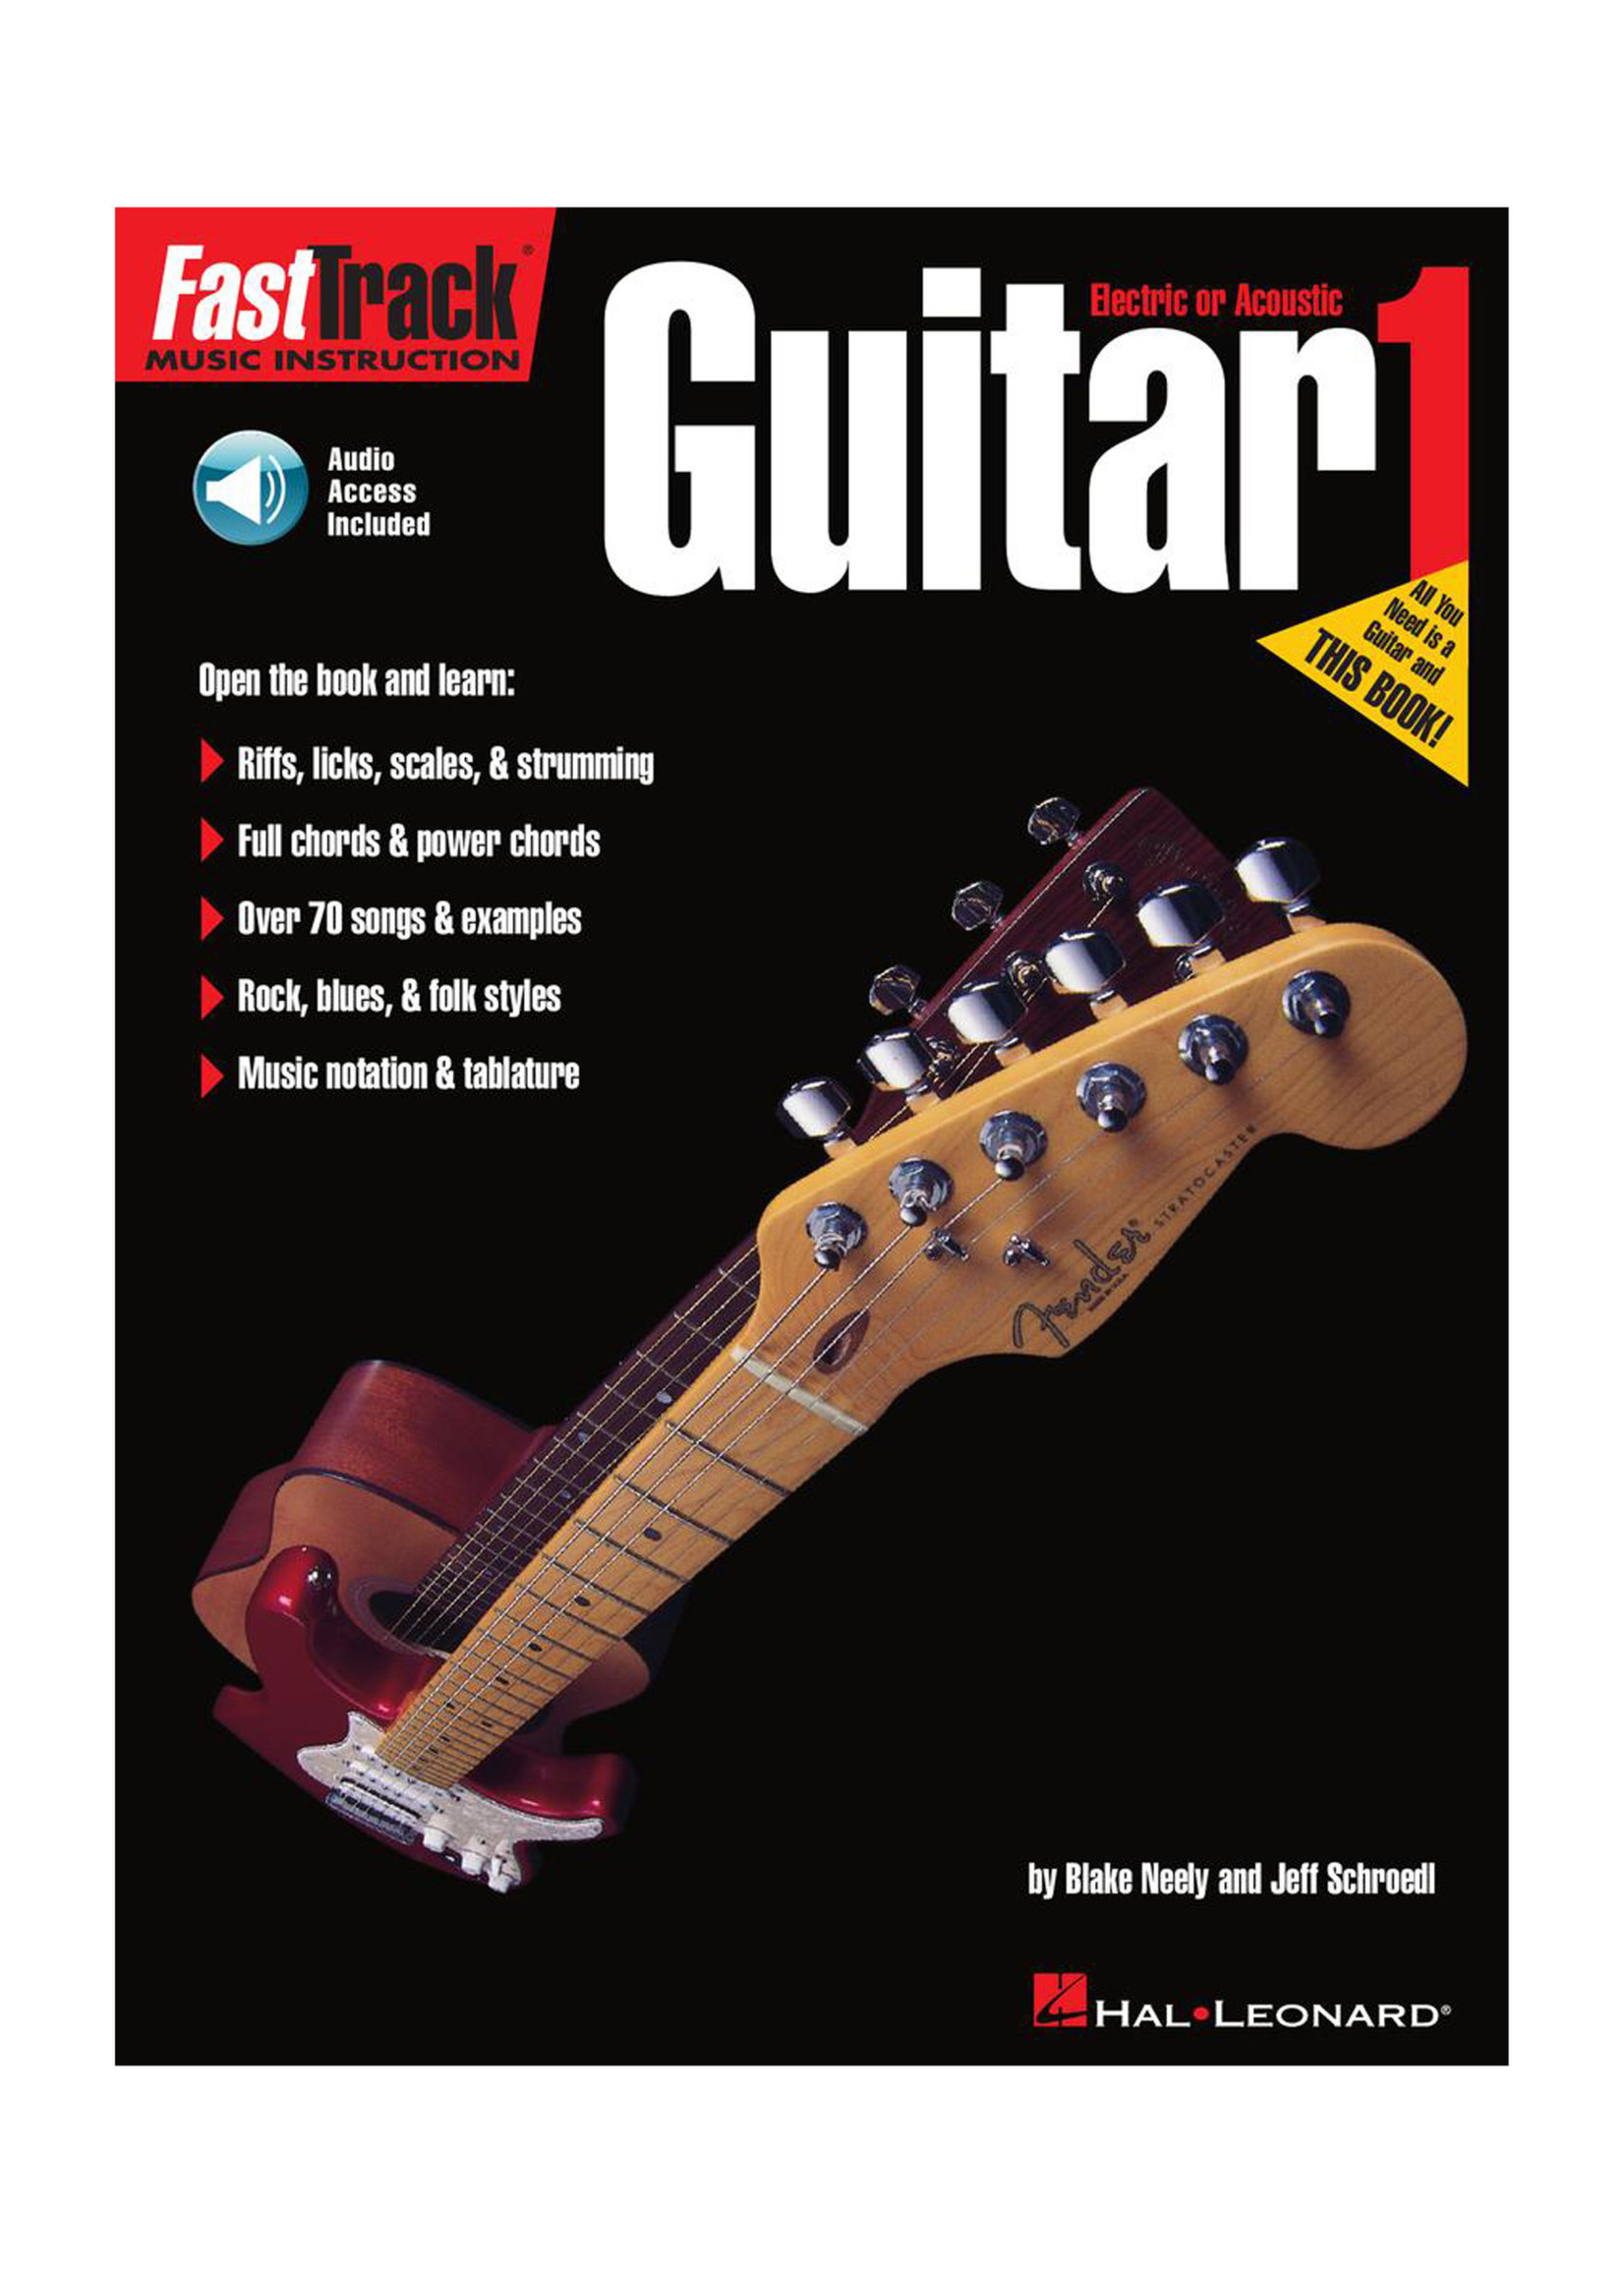 Hal Leonard FastTrack Guitar Method – Book 1